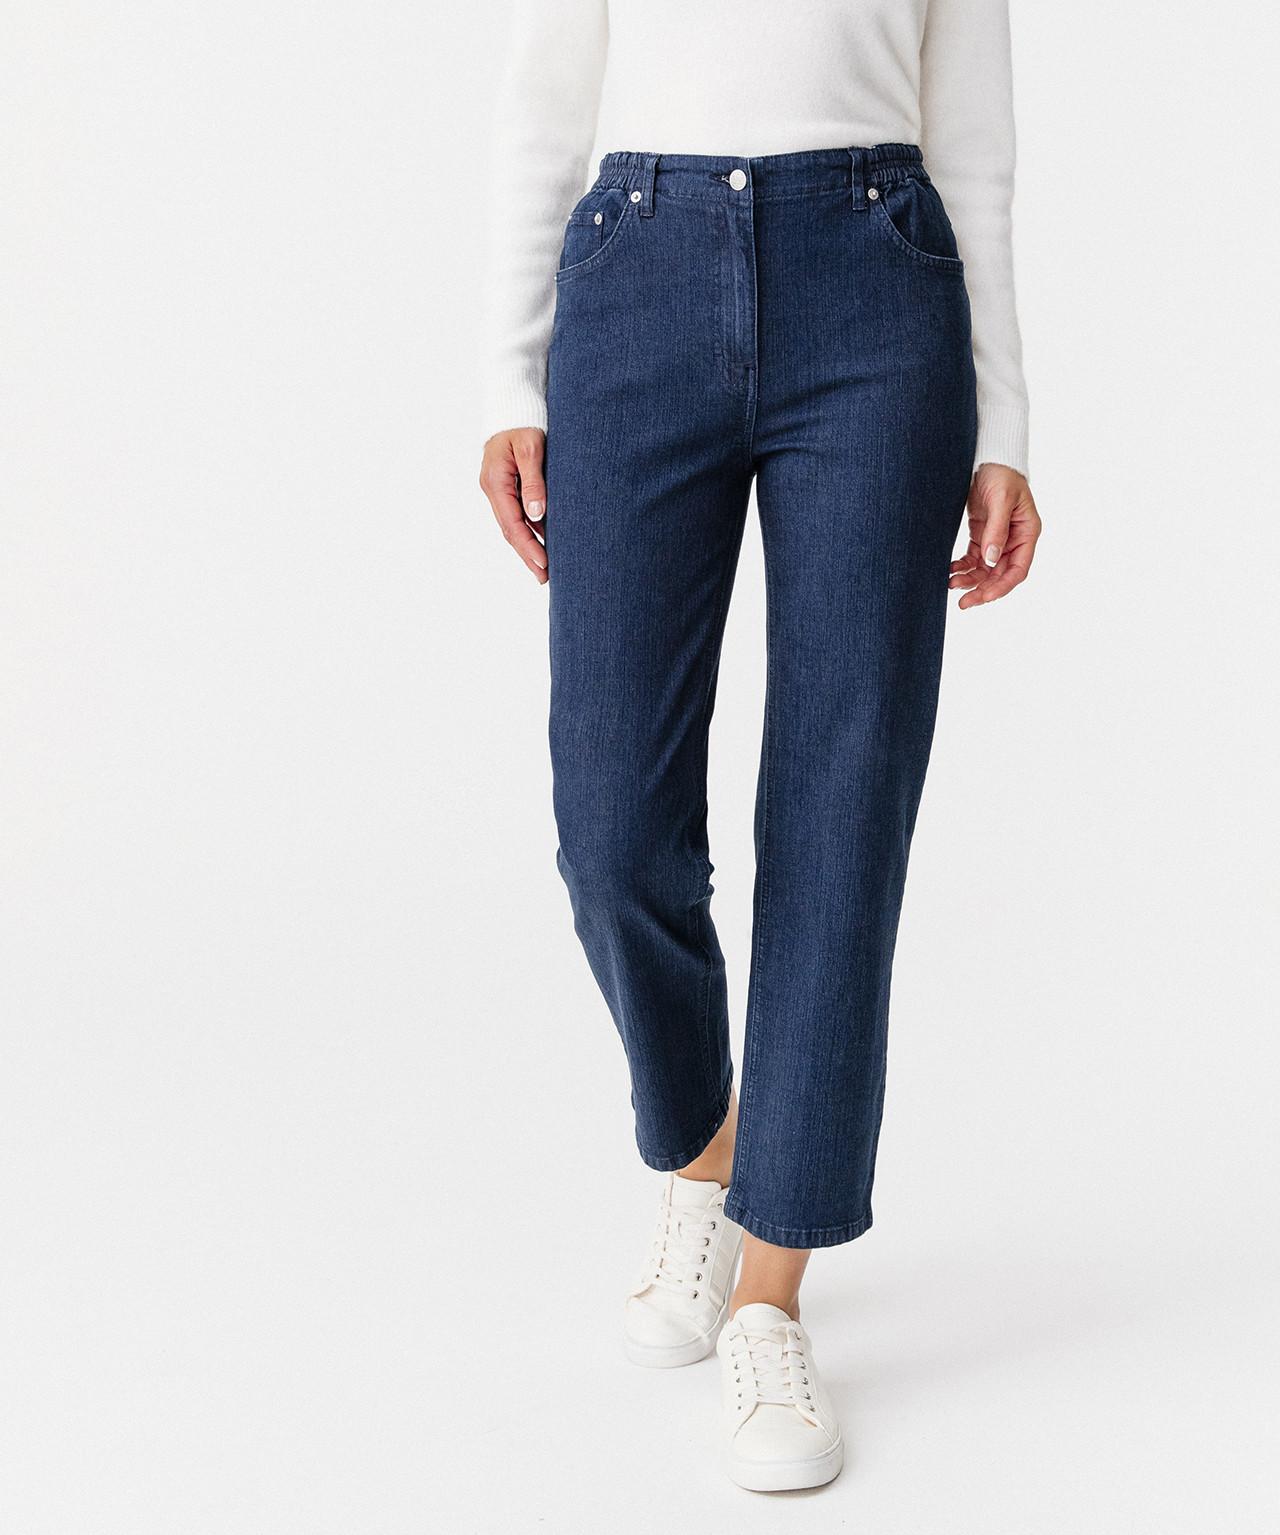 5-pocket-jeans In 2 Körpergrößen. Damen Blau 46 von Damart